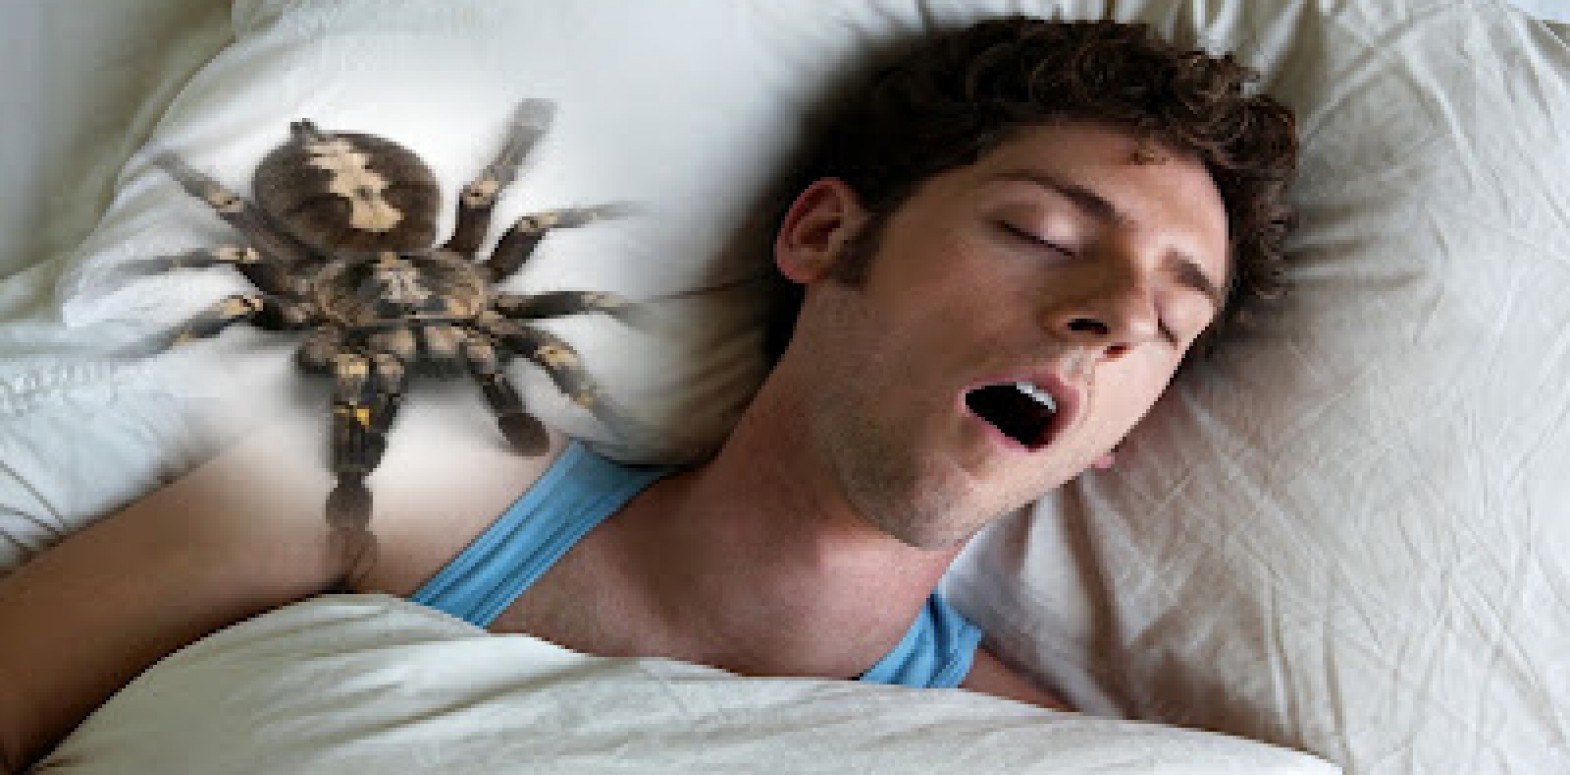 هل يبتلع الإنسان في حياته 70 حشرة منها 10 عناكب خلال نومه؟